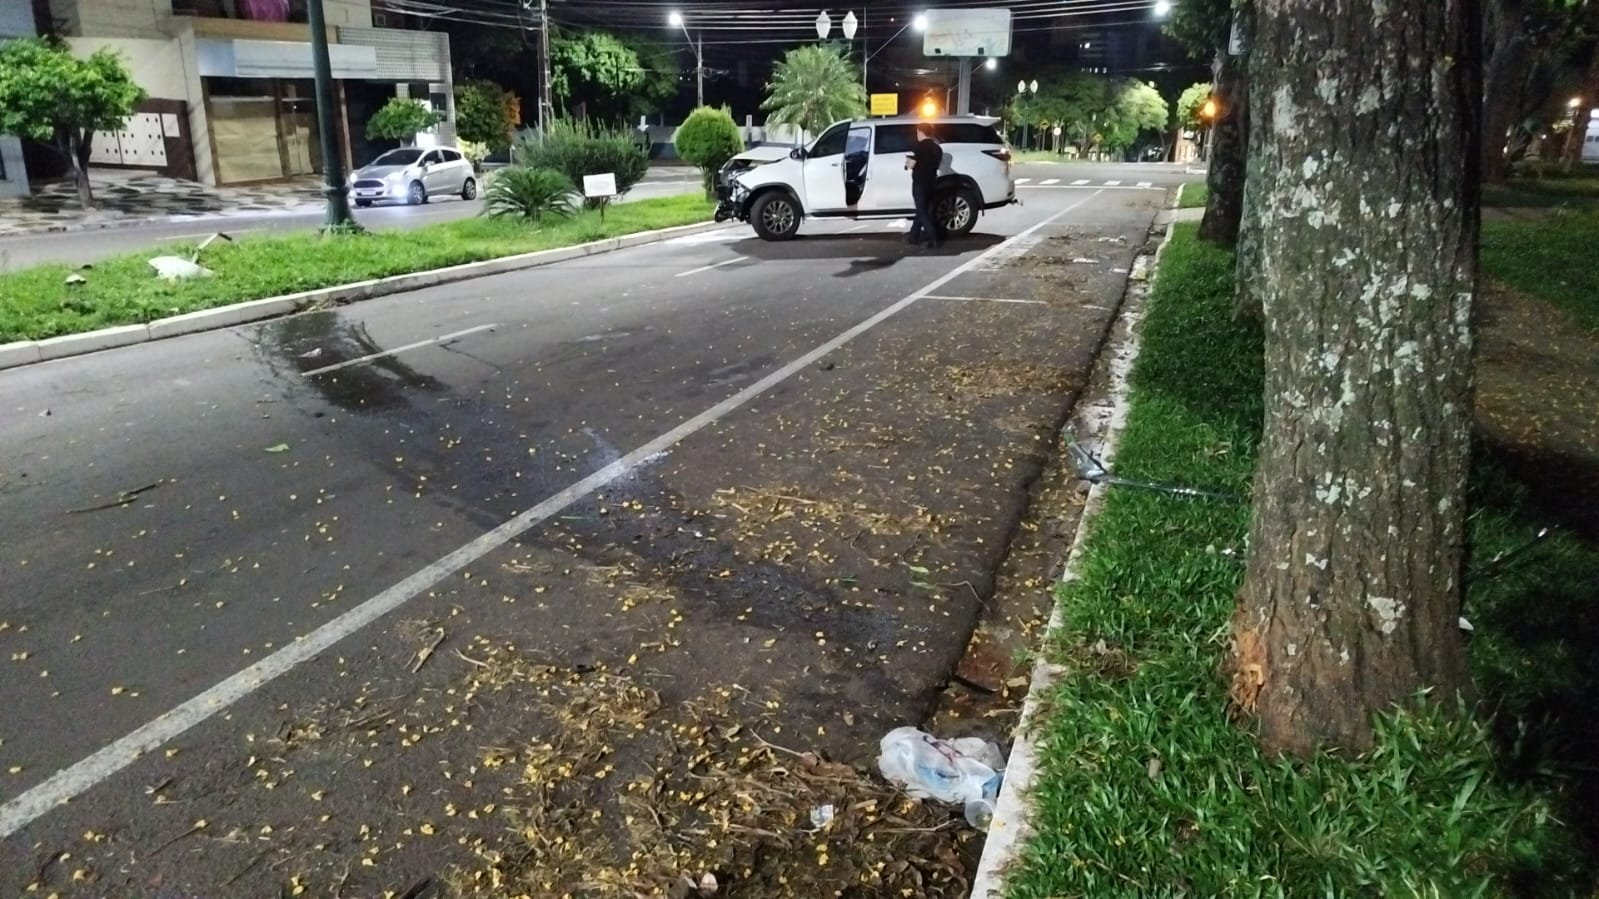 Jornal Ilustrado - Mulher fica ferida após colidir veículo contra árvore na avenida Maringá, em Umuarama